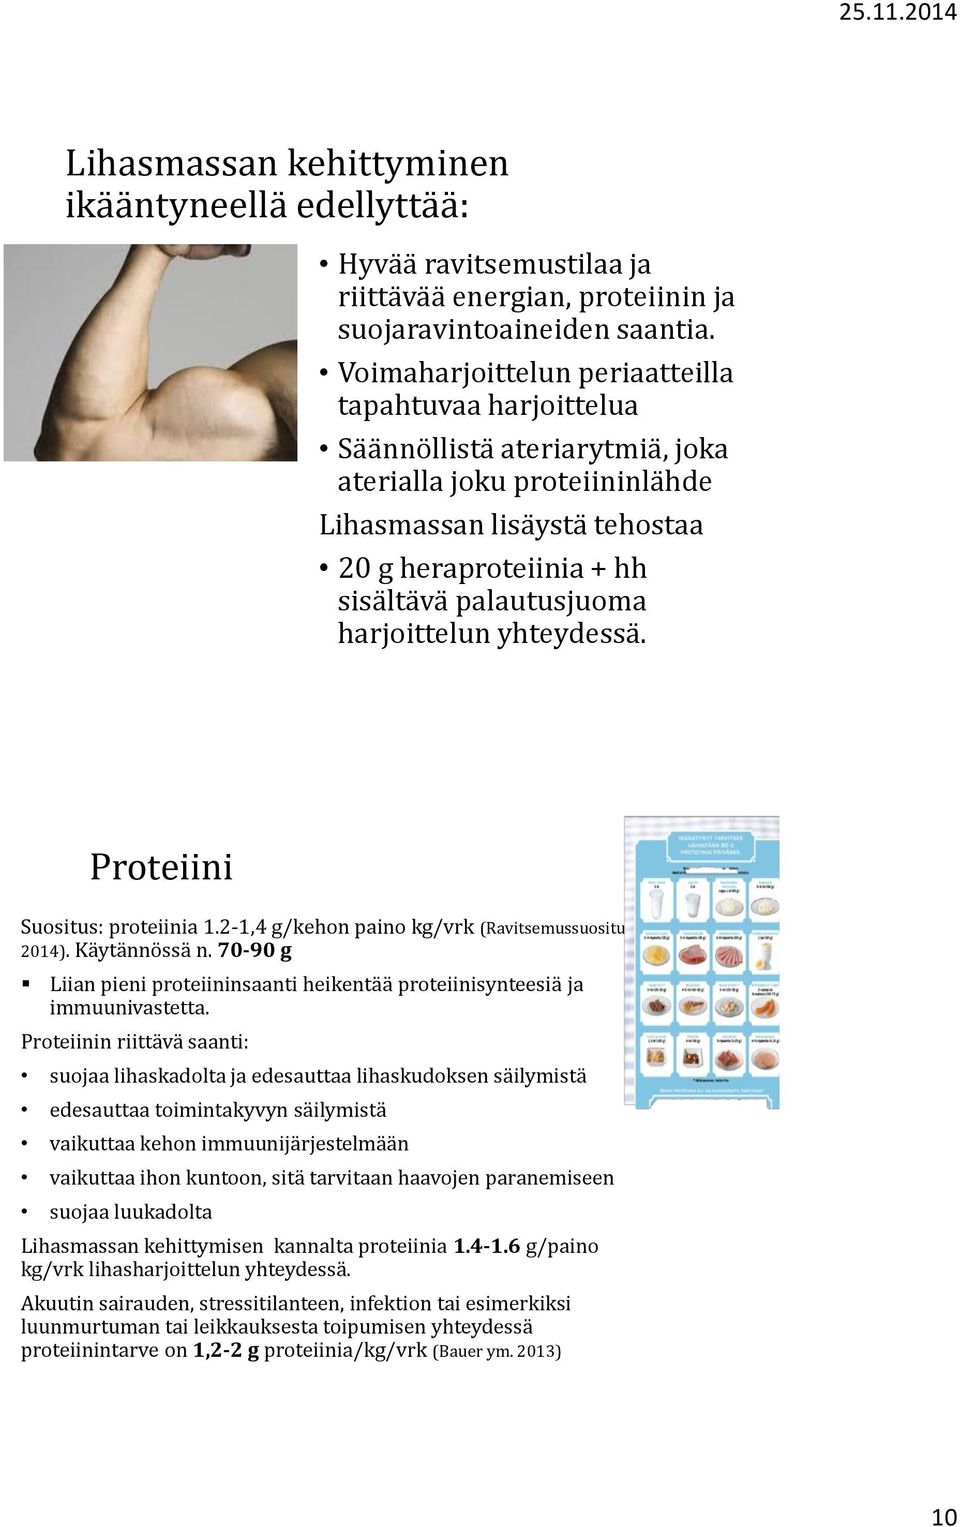 harjoittelun yhteydessä. Proteiini Suositus: proteiinia 1.2-1,4 g/kehon paino kg/vrk (Ravitsemussuositus 2014). Käytännössä n.